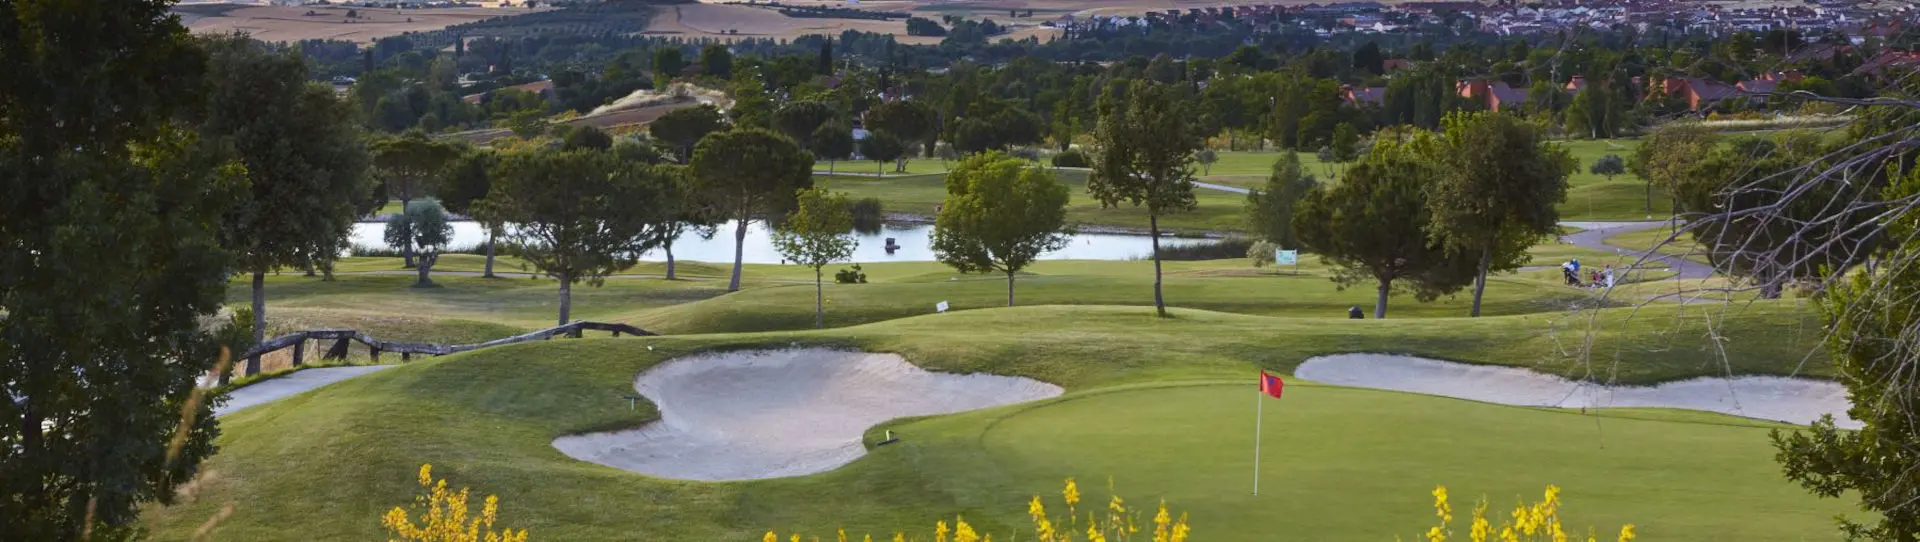 Spain golf courses - Club de Golf Retamares - Photo 3